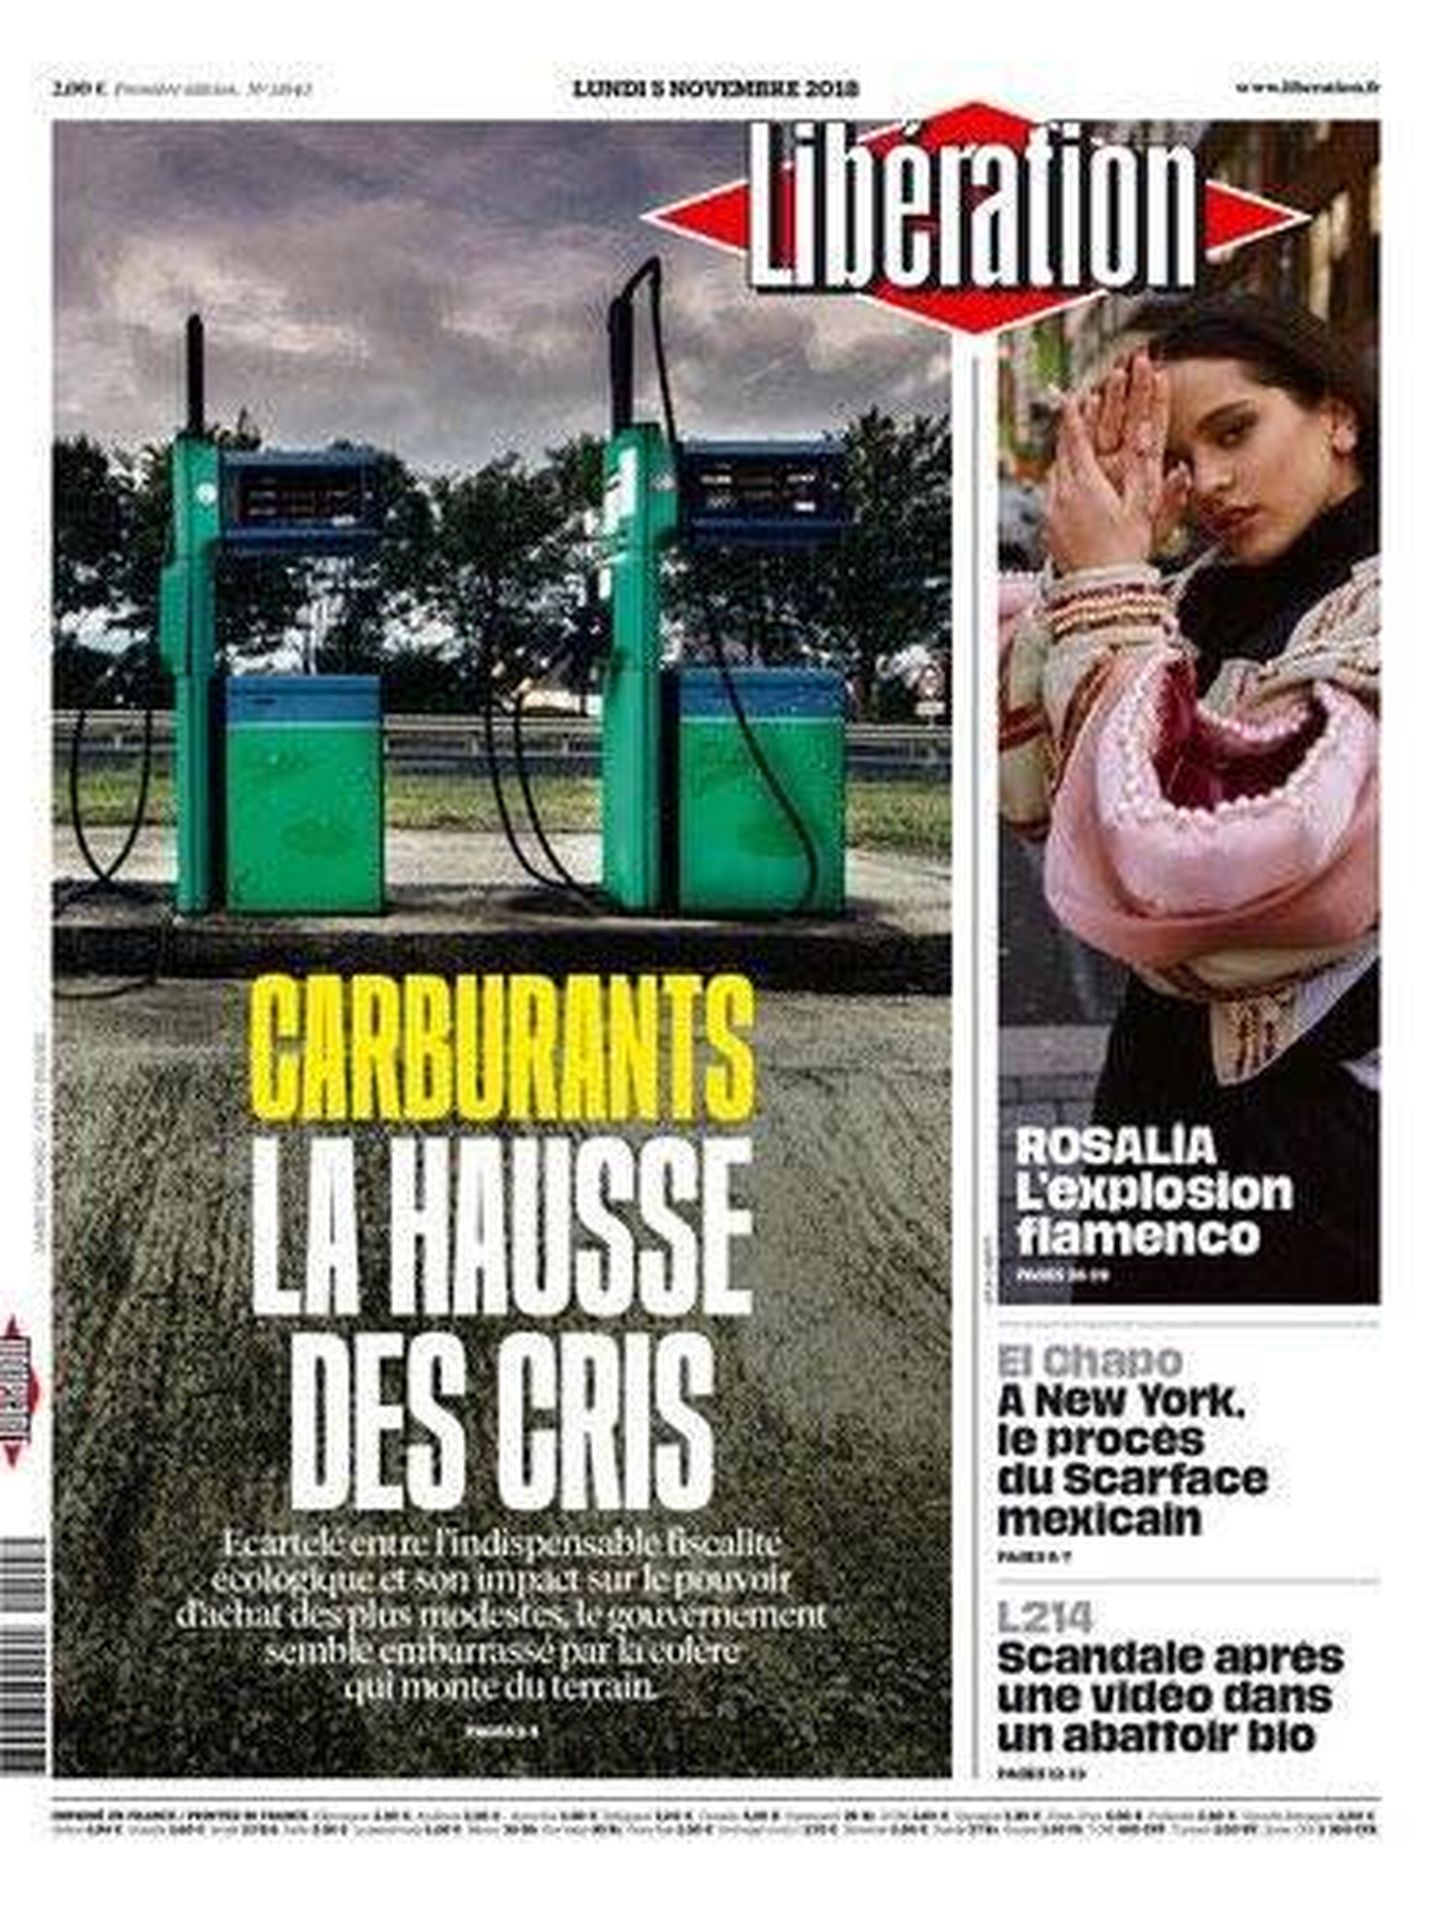 Portada de 'Libération'.